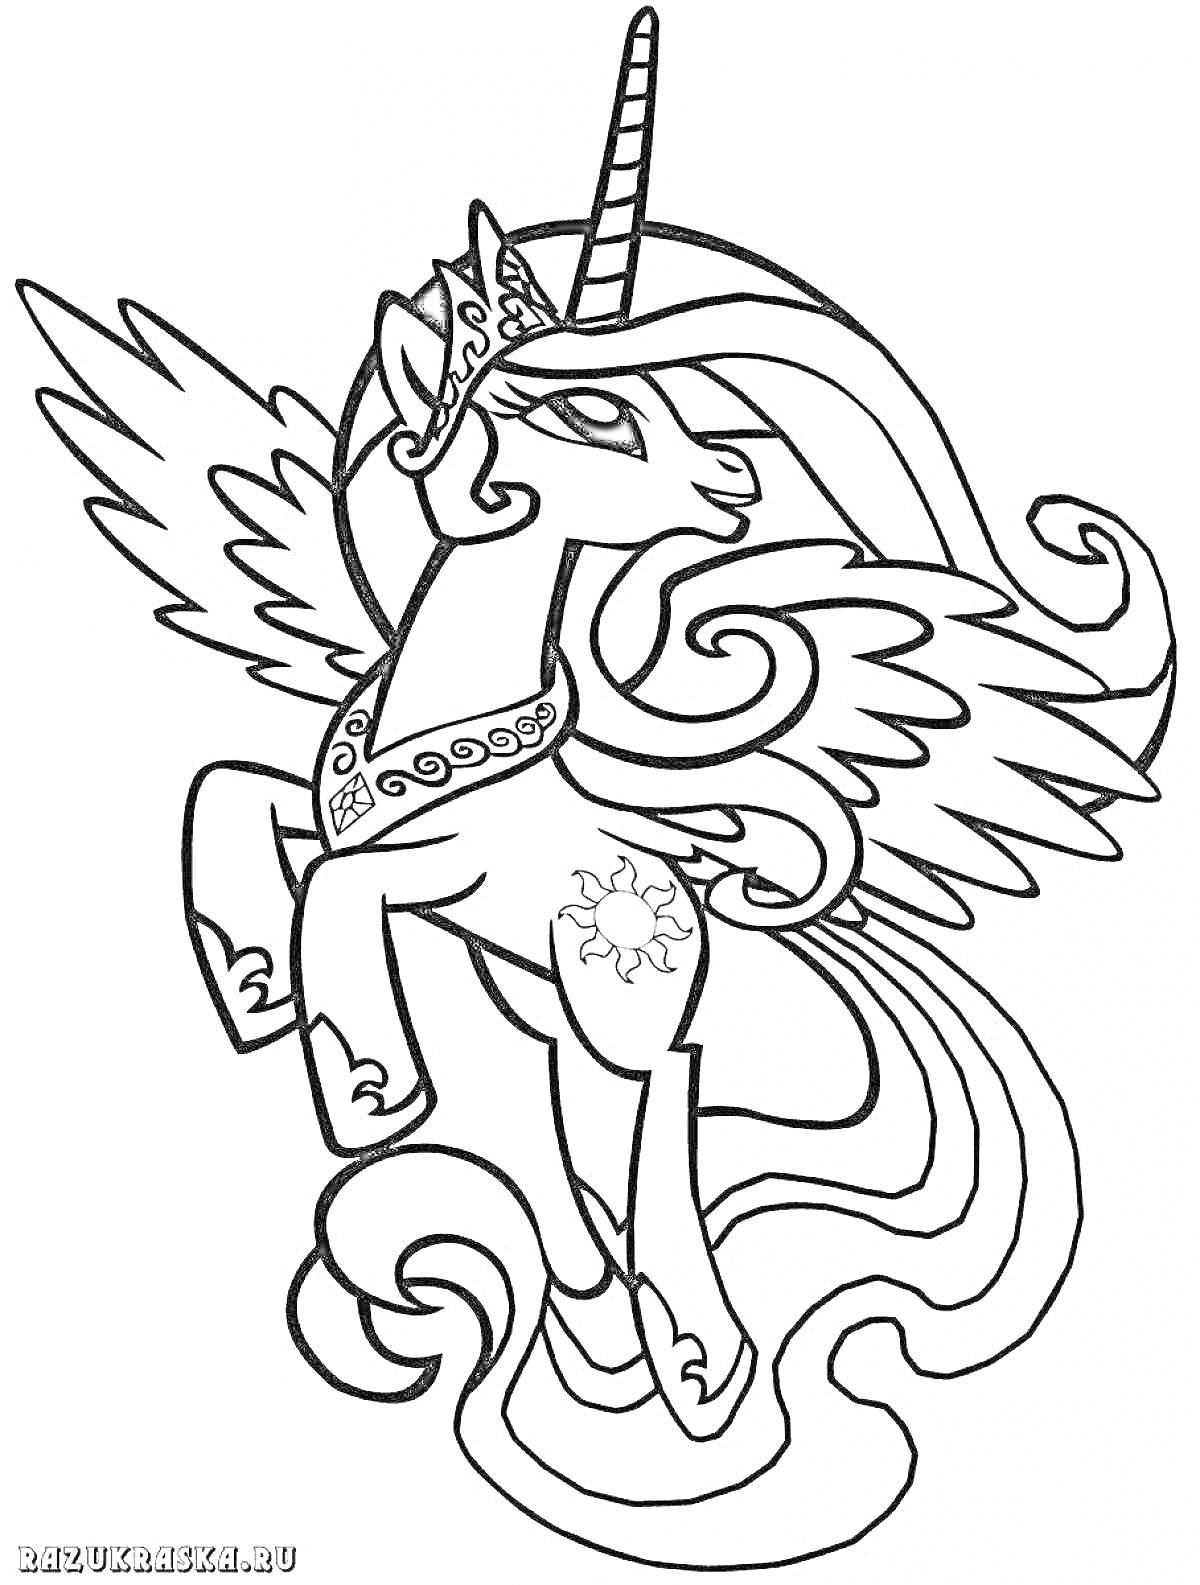 Раскраска Принцесса Селестия с расправленными крыльями и короной на голове в полете